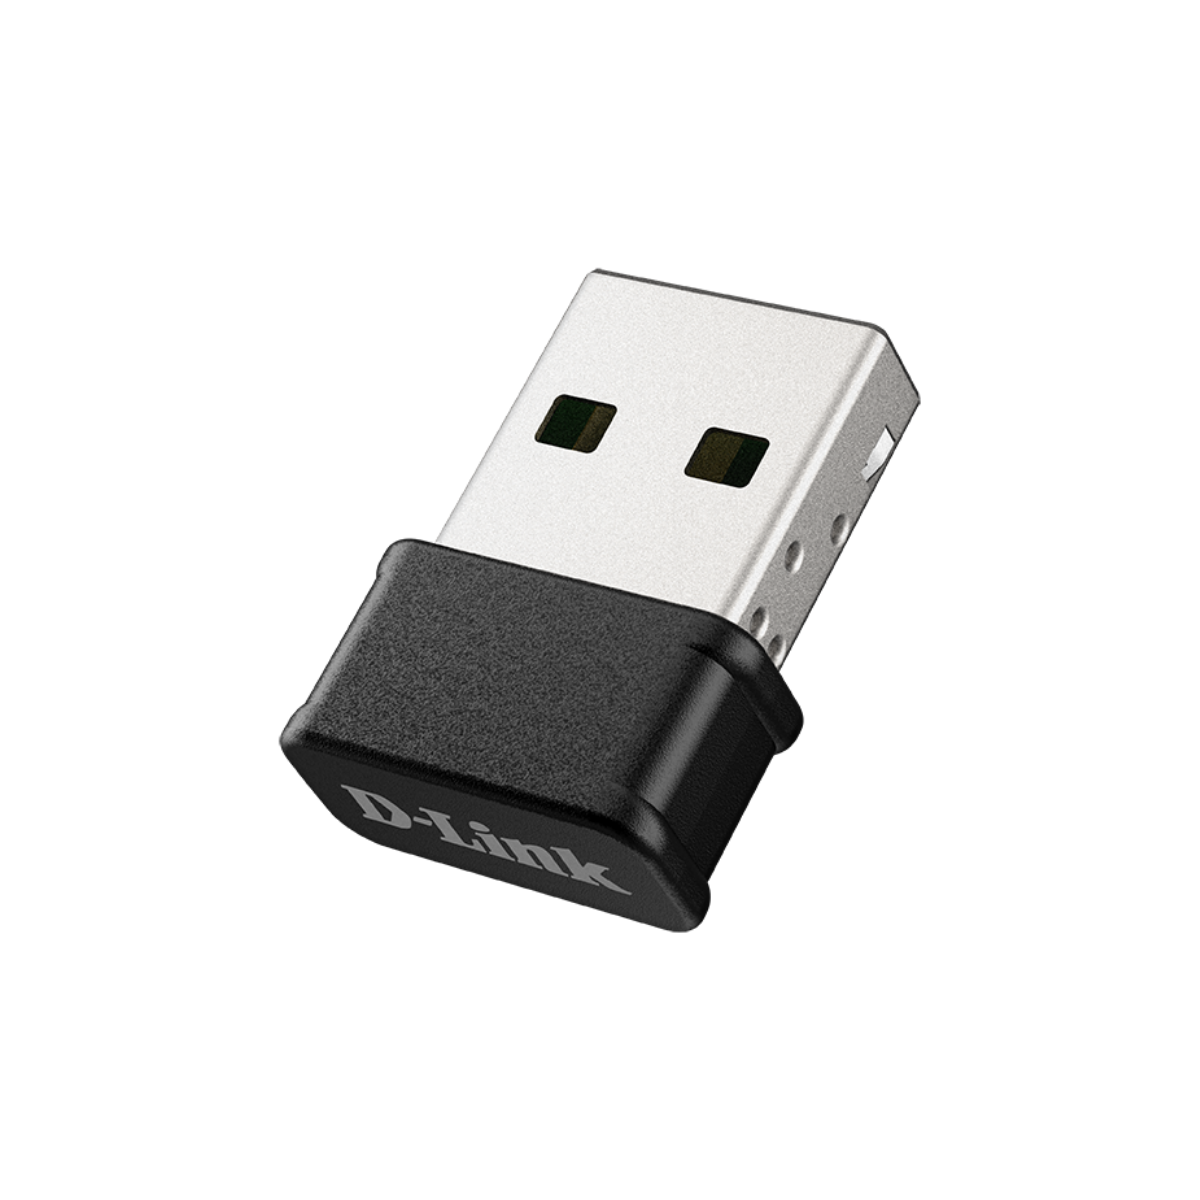 AC1300 MU-MIMO Wi-Fi Nano USB Adapter | DWA-181